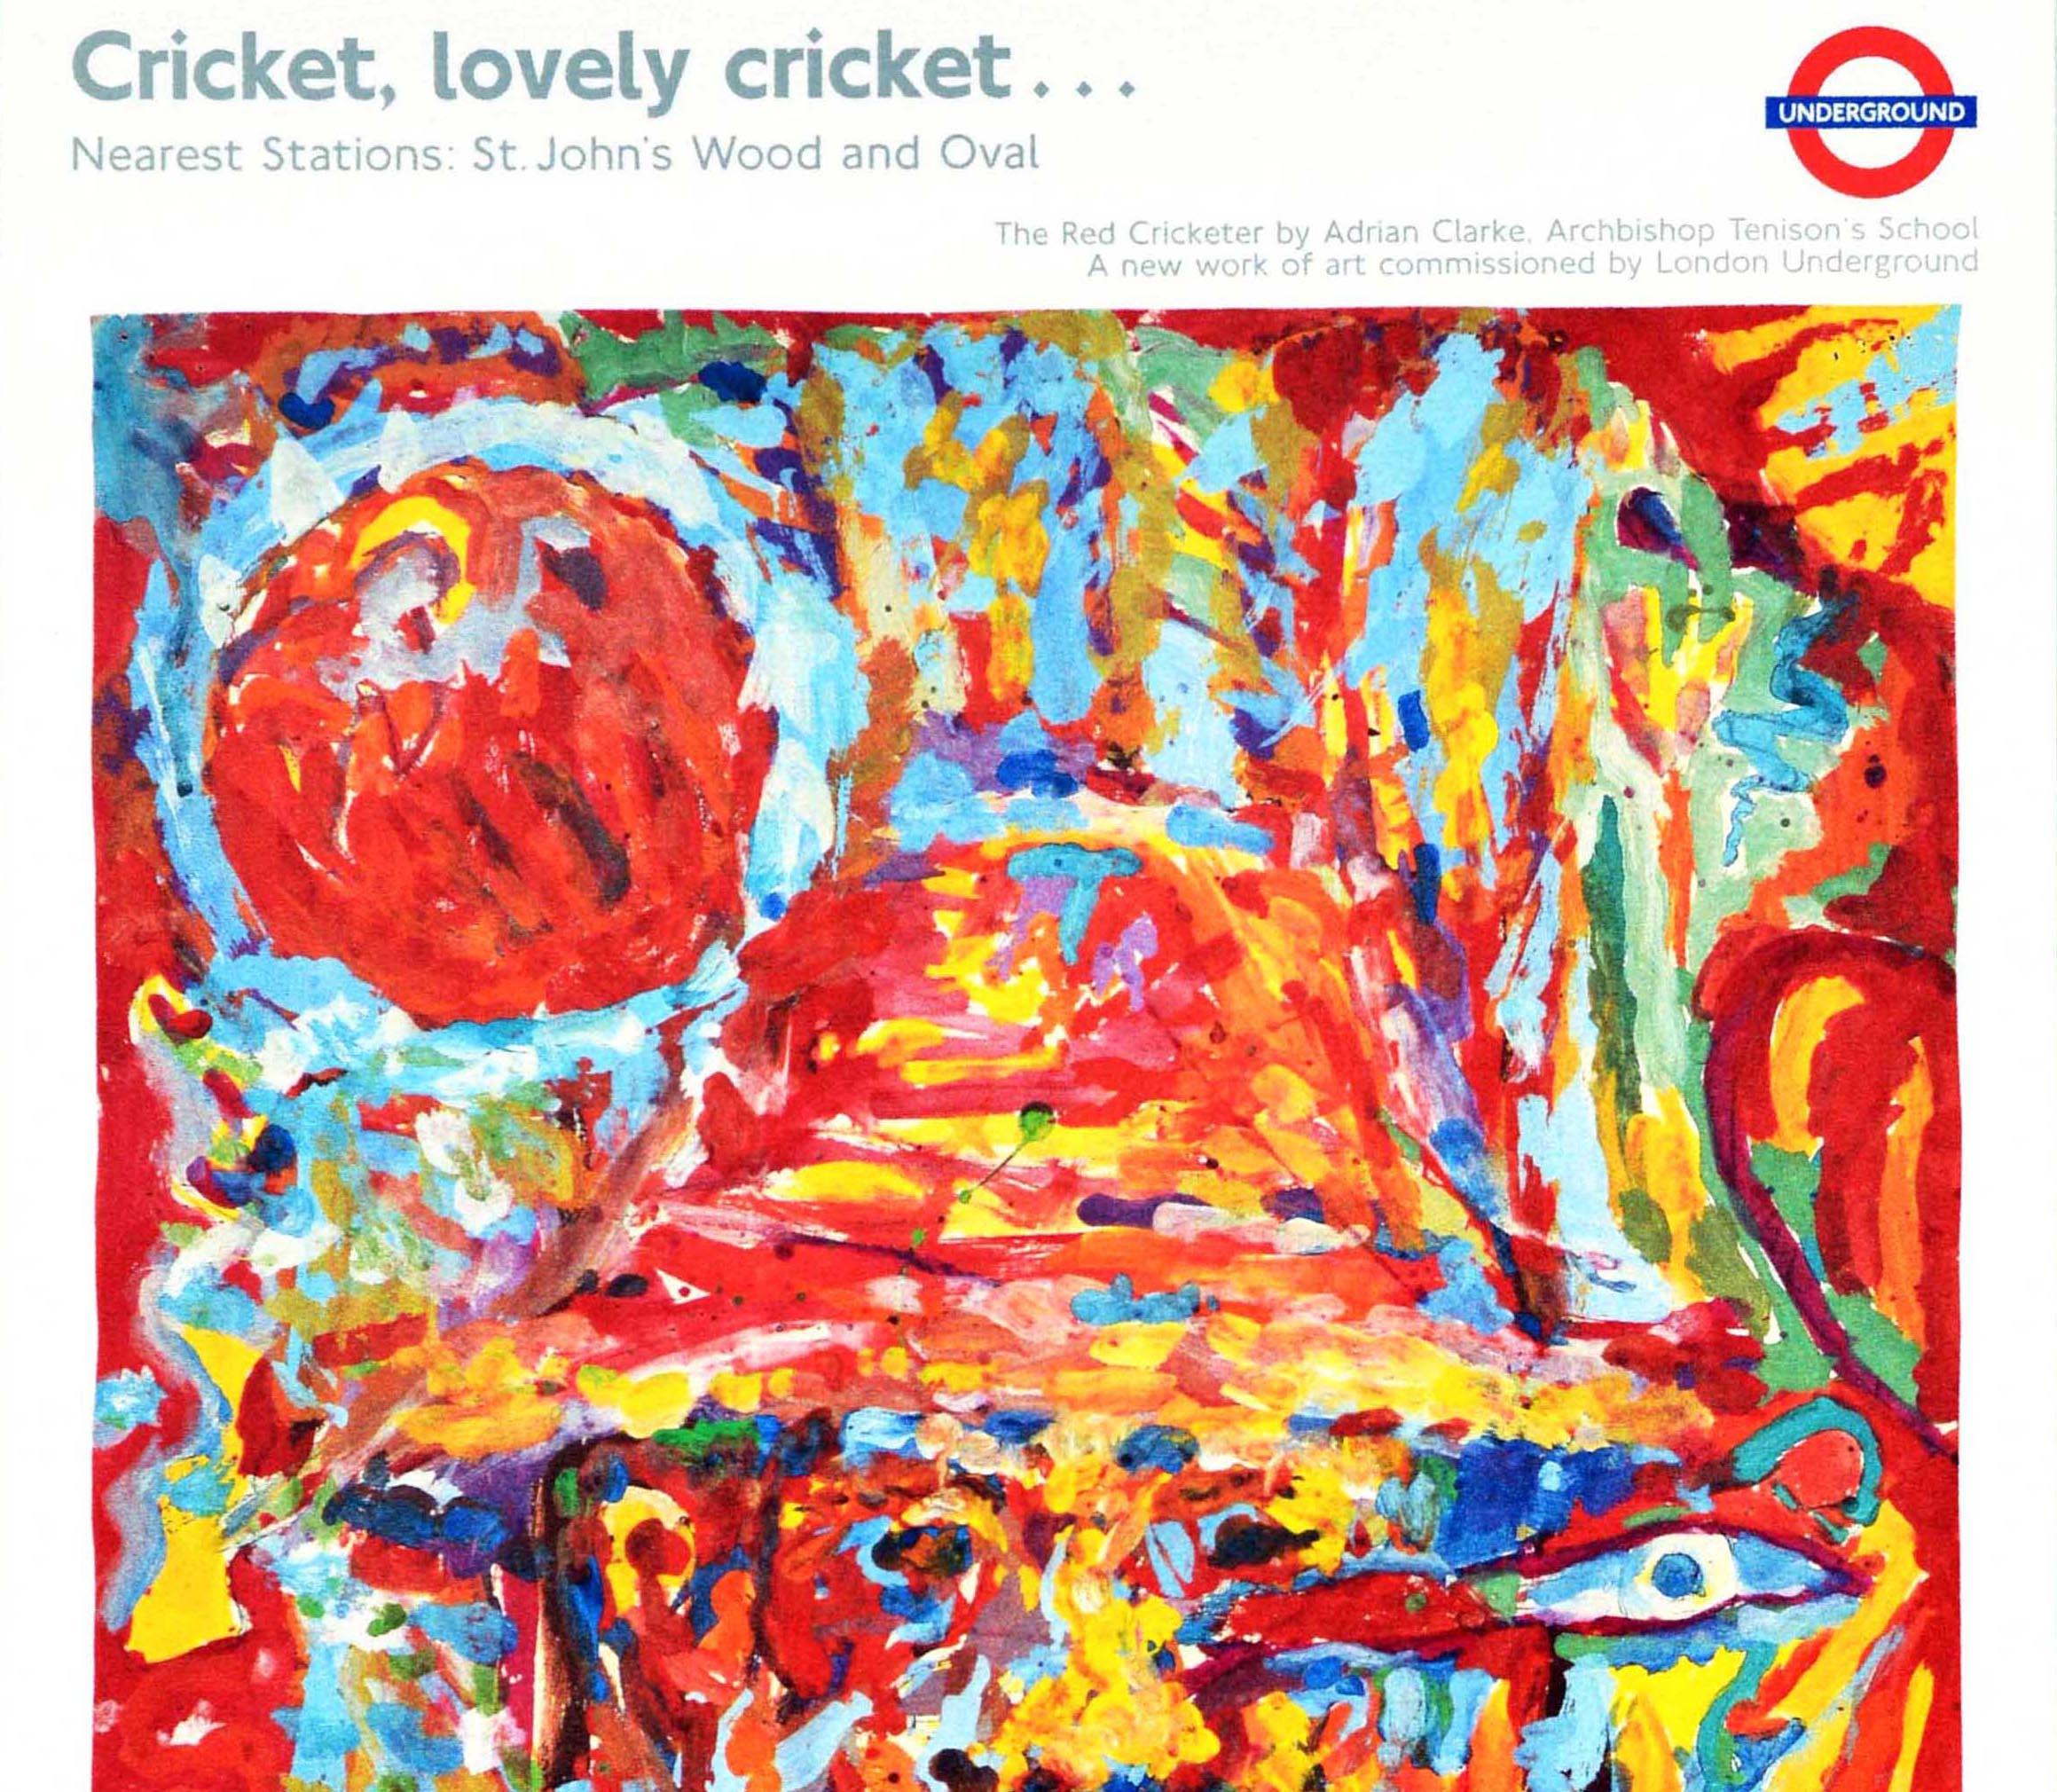 British Original Vintage London Underground Poster LT Lovely Cricket Adrian Clarke Art